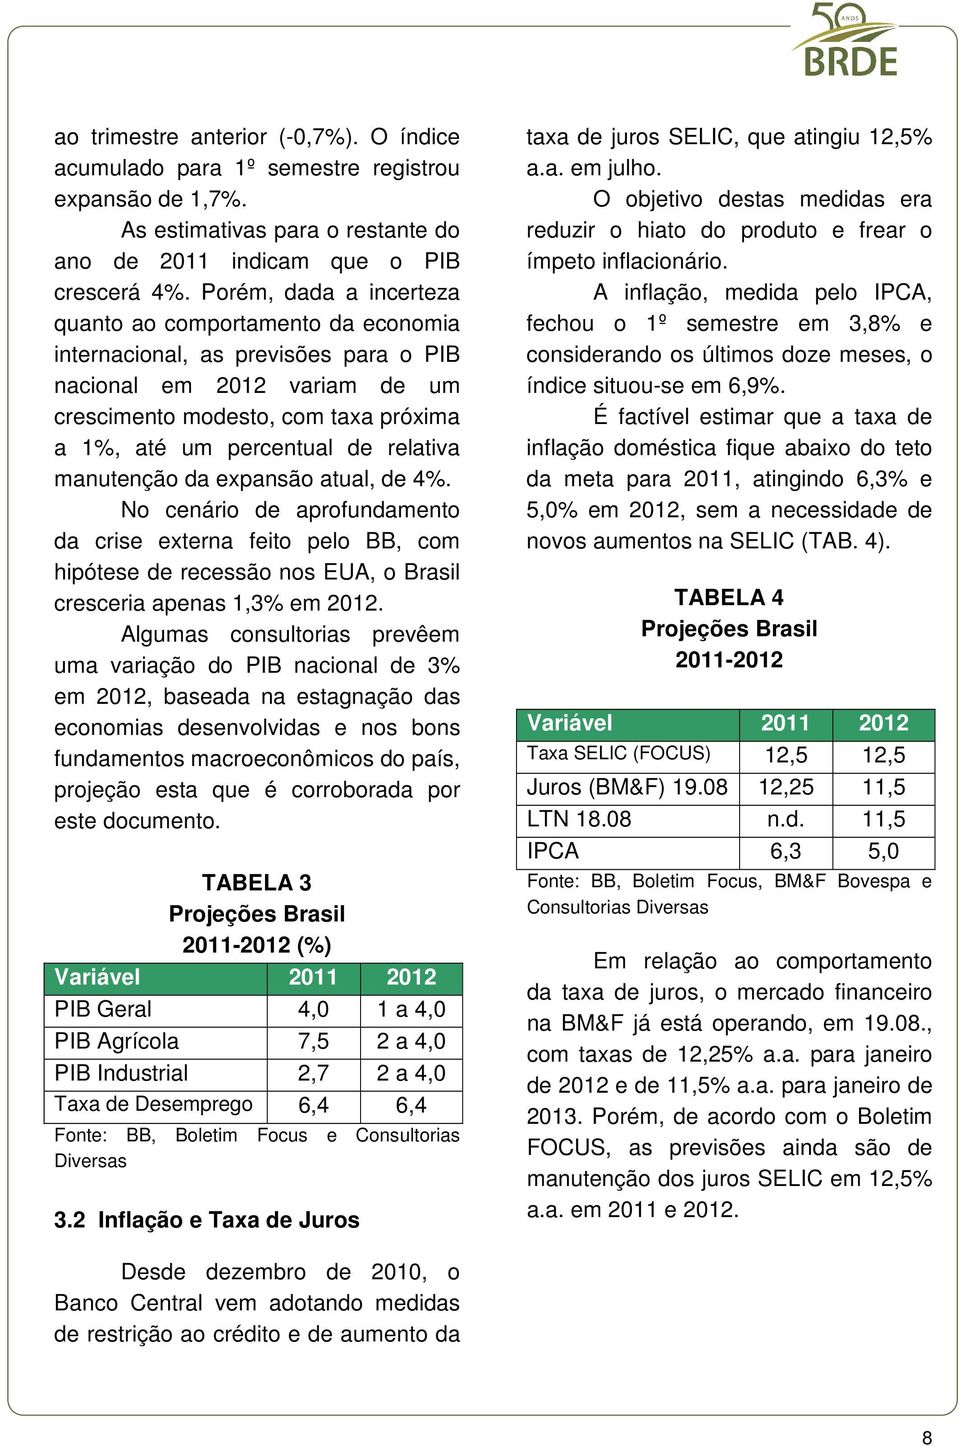 relativa manutenção da expansão atual, de 4%. No cenário de aprofundamento da crise externa feito pelo BB, com hipótese de recessão nos EUA, o Brasil cresceria apenas 1,3% em 2012.